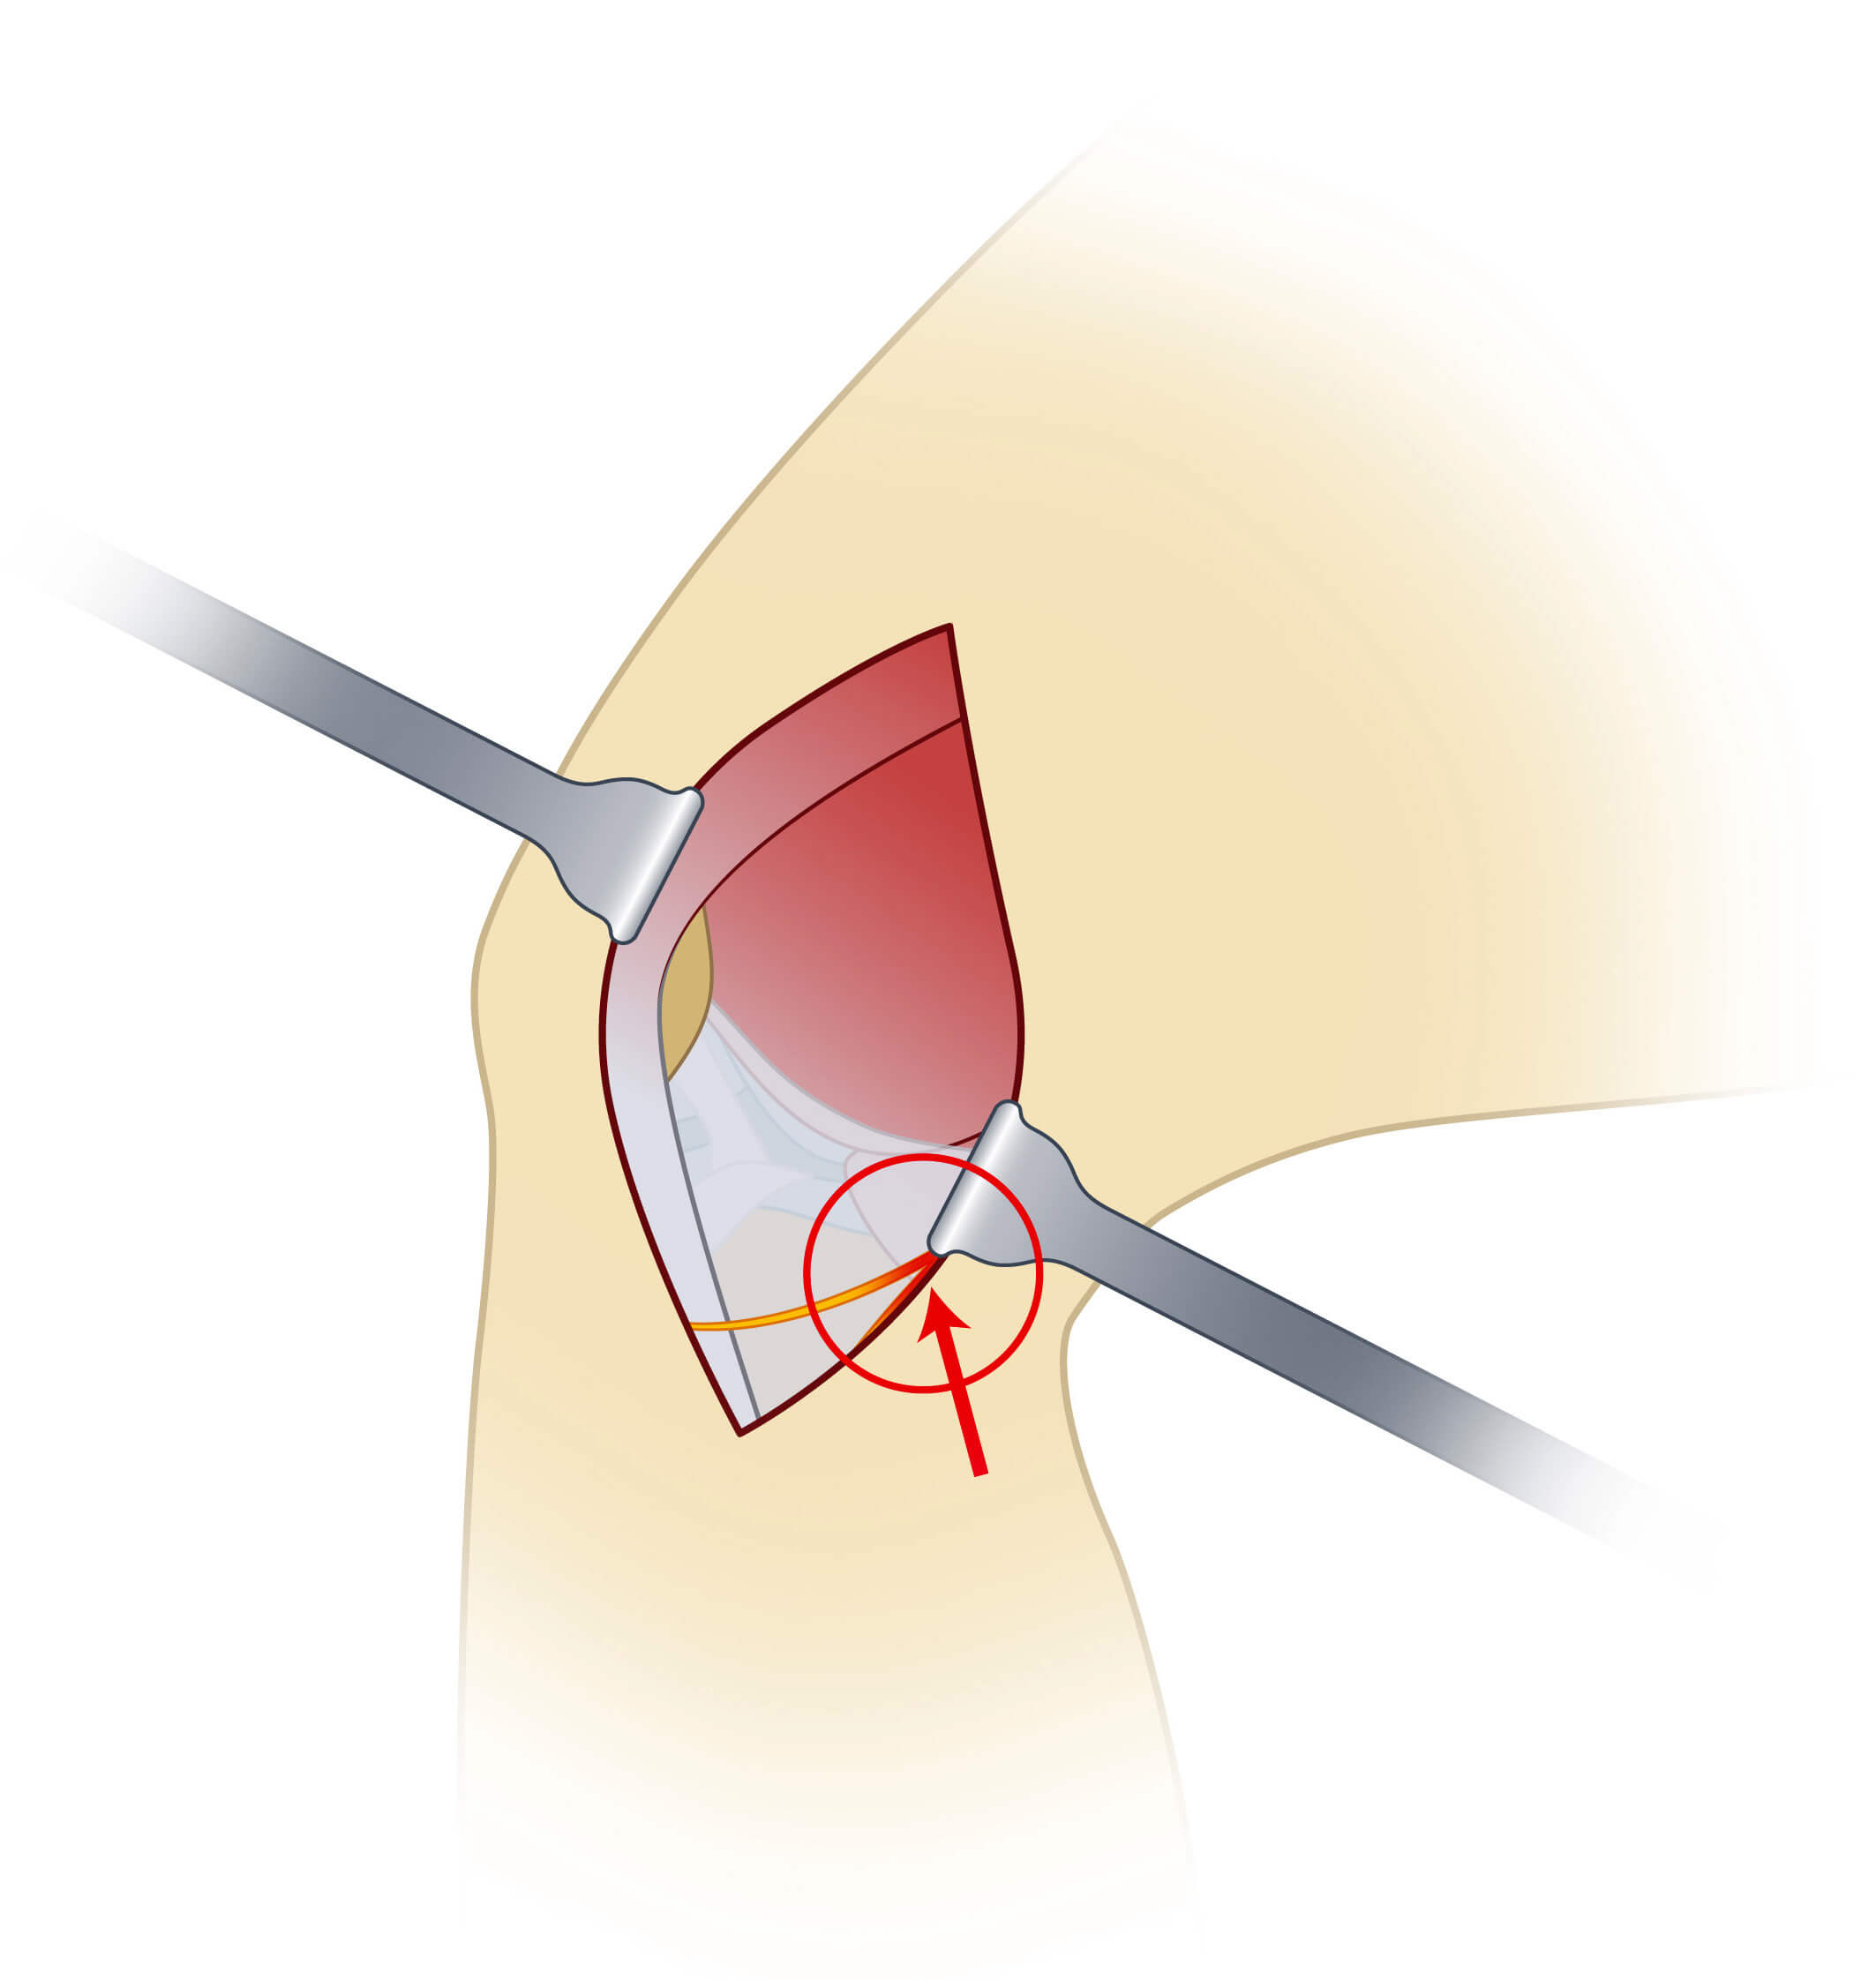 Infrapatellaris Verletzung Knie OP, Nervenverletzung nach Knie OP, Ramus infrapatellaris Syndrom